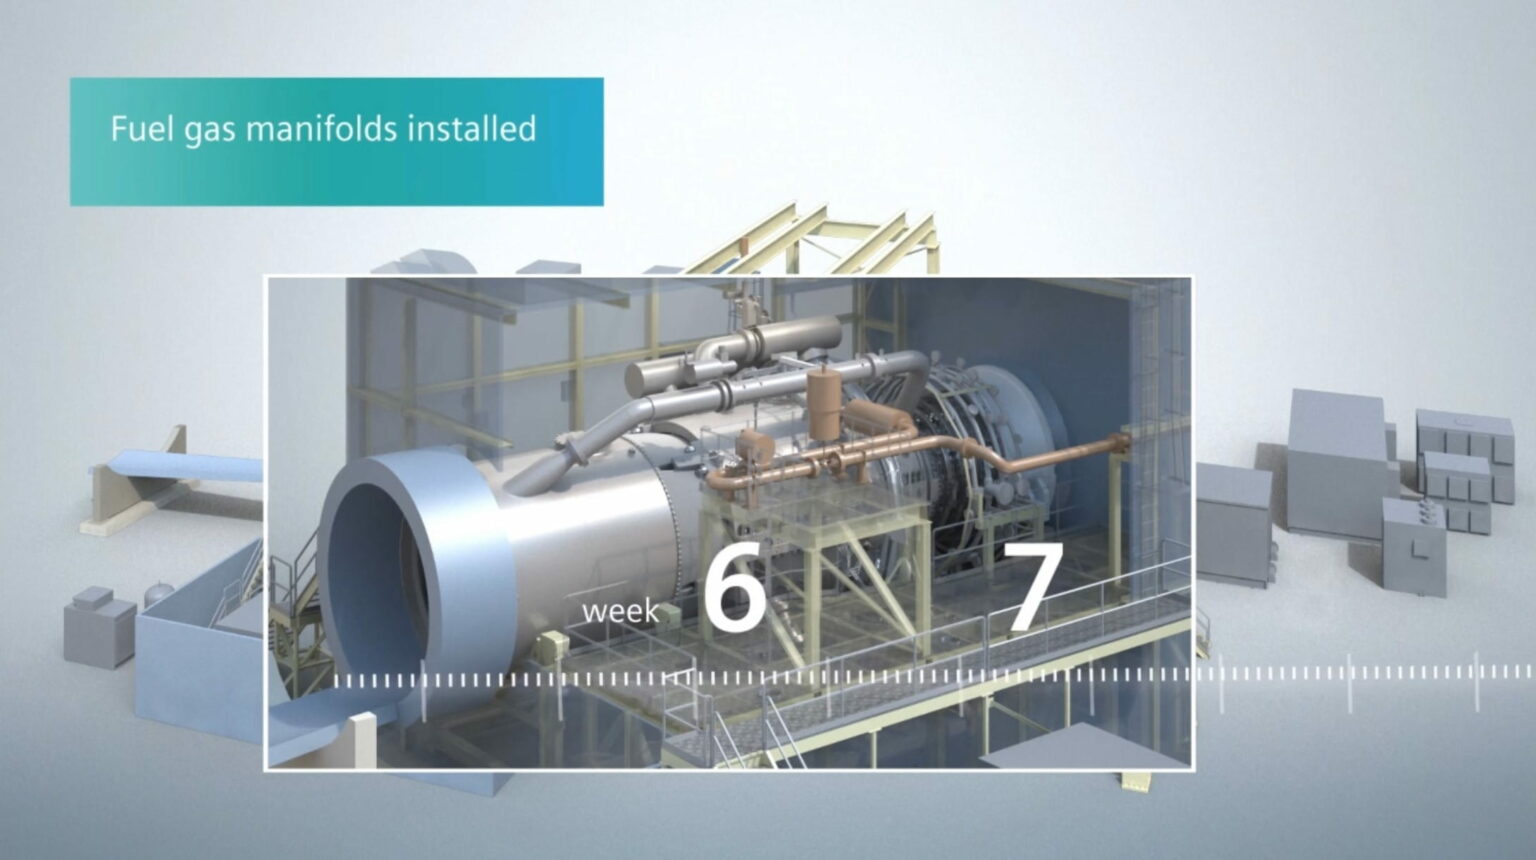 Infografía explicativa sobre la instalación de una turbina de gas y sus características en la industria.